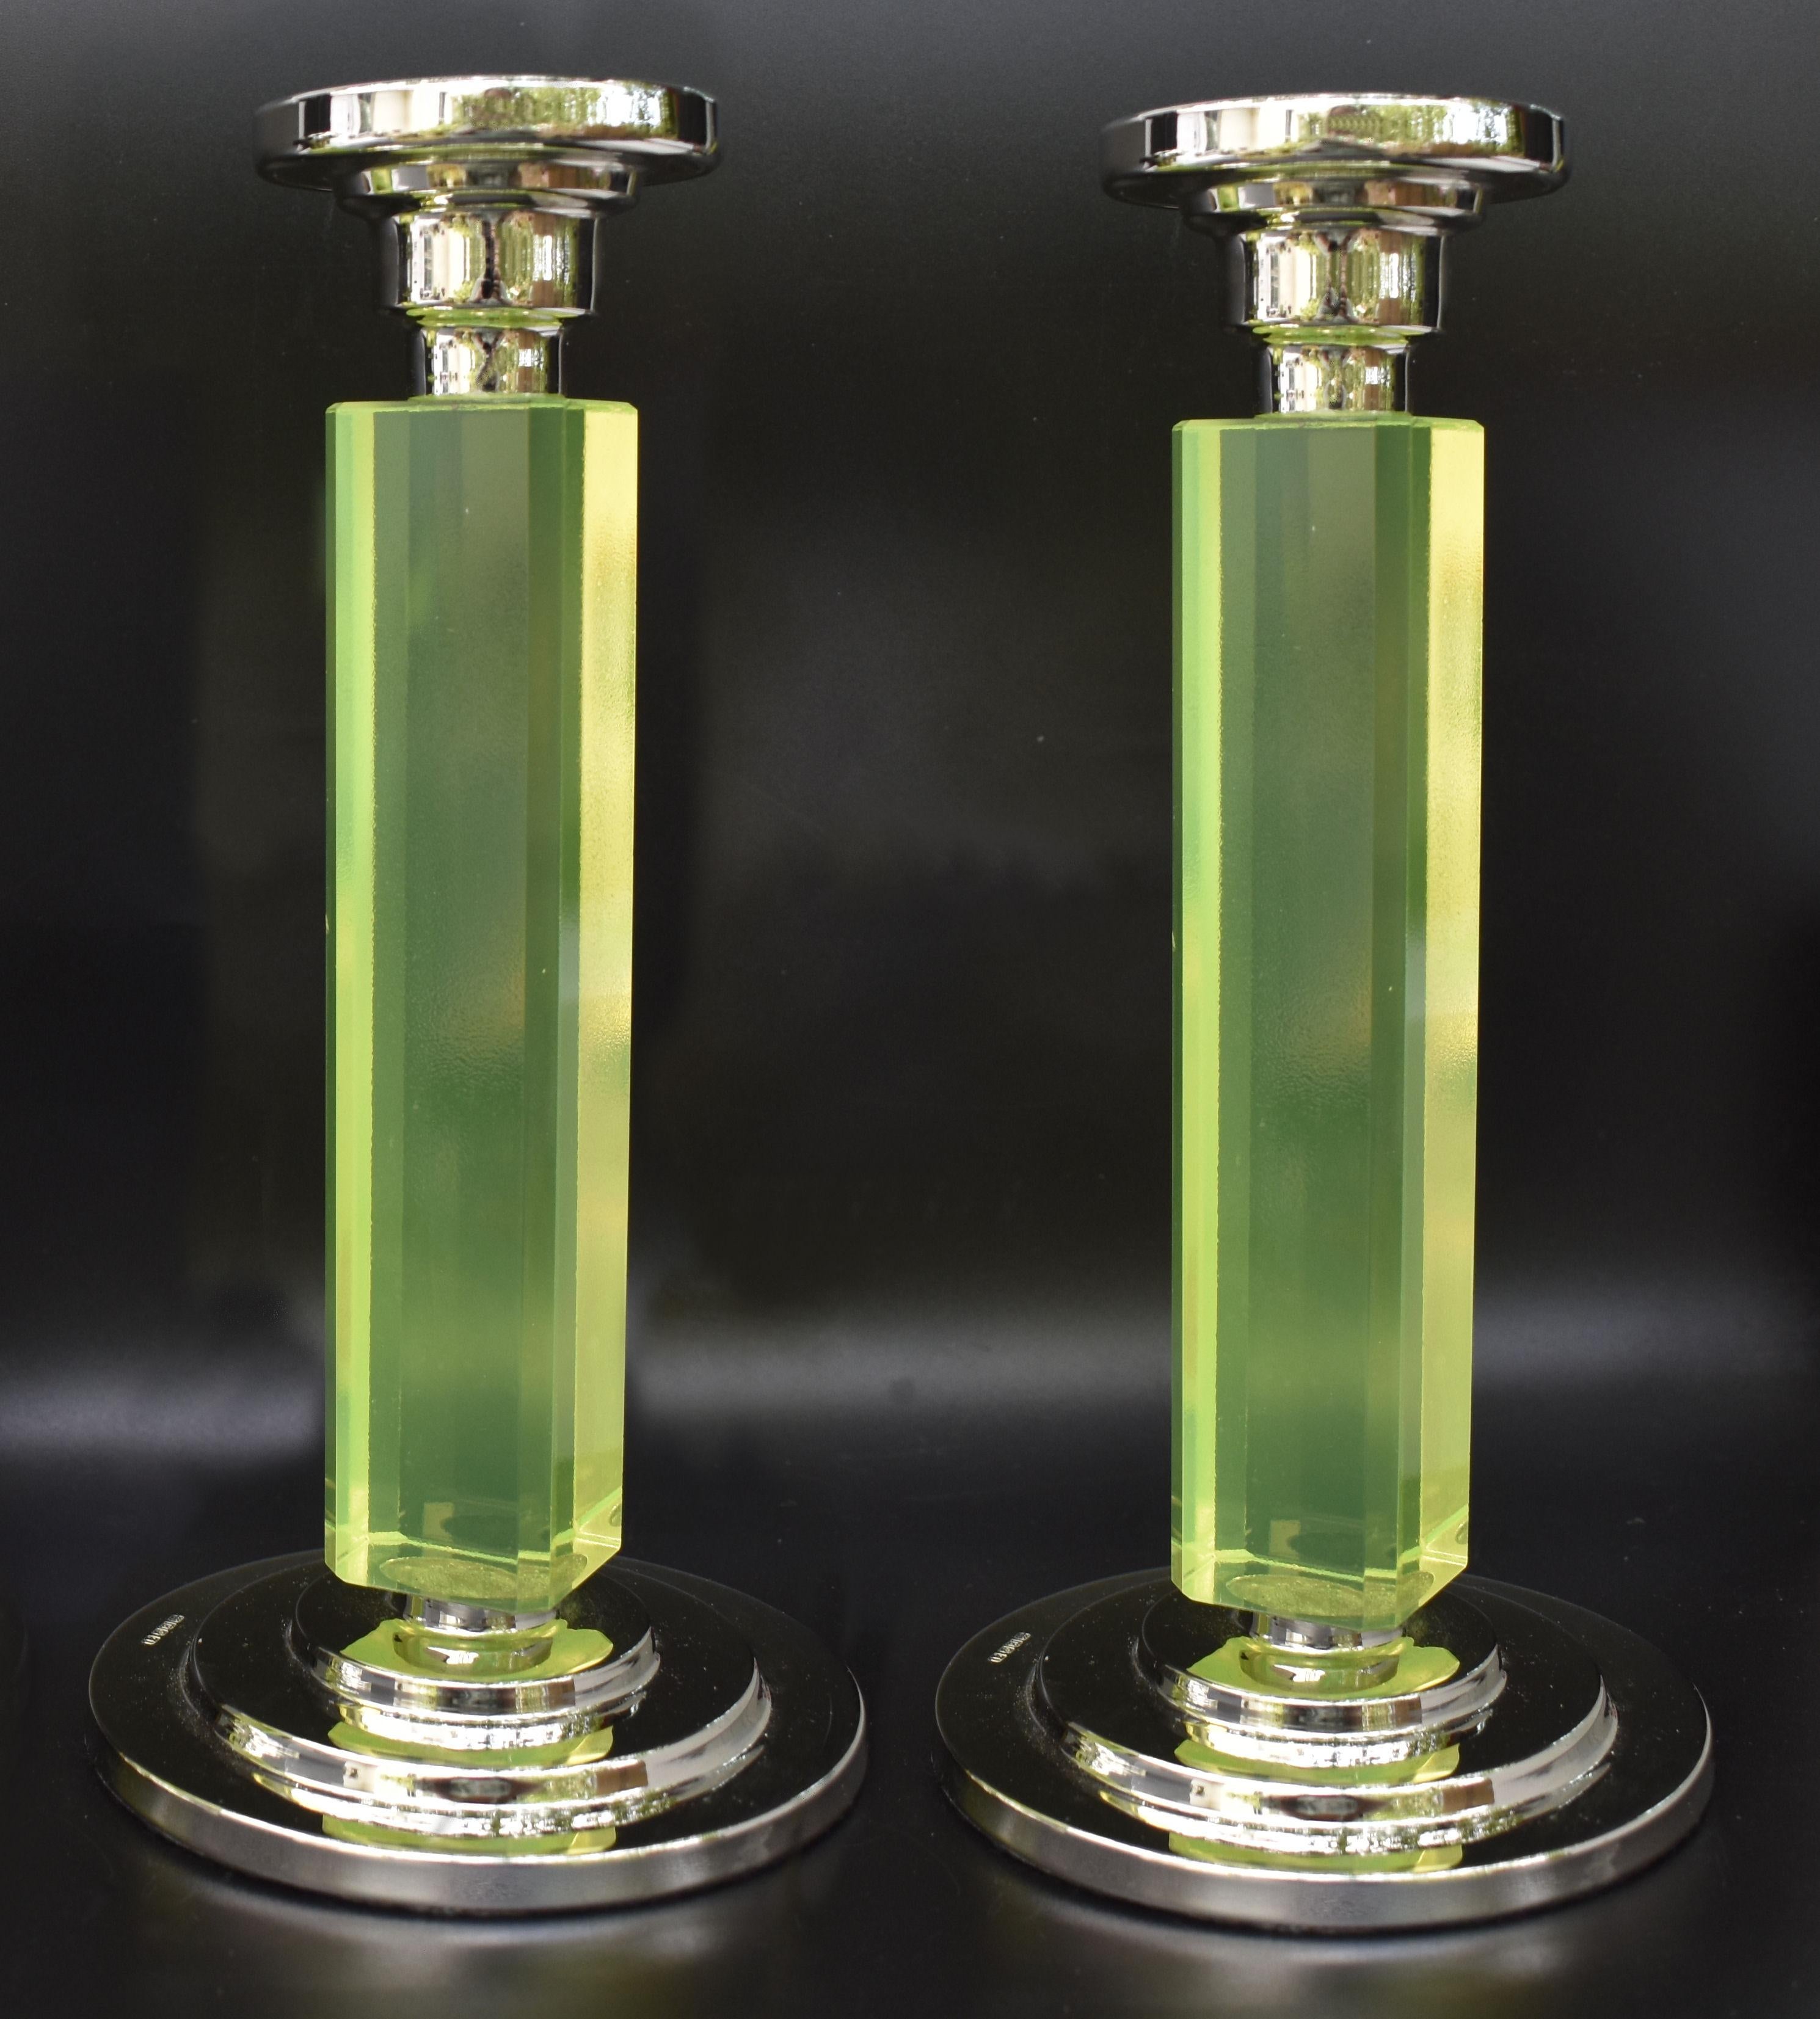 Sehr stilvolles und gut dimensioniertes Paar passender Art-Déco-Kerzenständer aus den 1930er Jahren. Sockel aus Neusilber, gestempelt, mit hohen Uran-Glassäulen. Schöner Zustand und ein Art-Déco-Liebhaber wird es zu schätzen wissen. An der